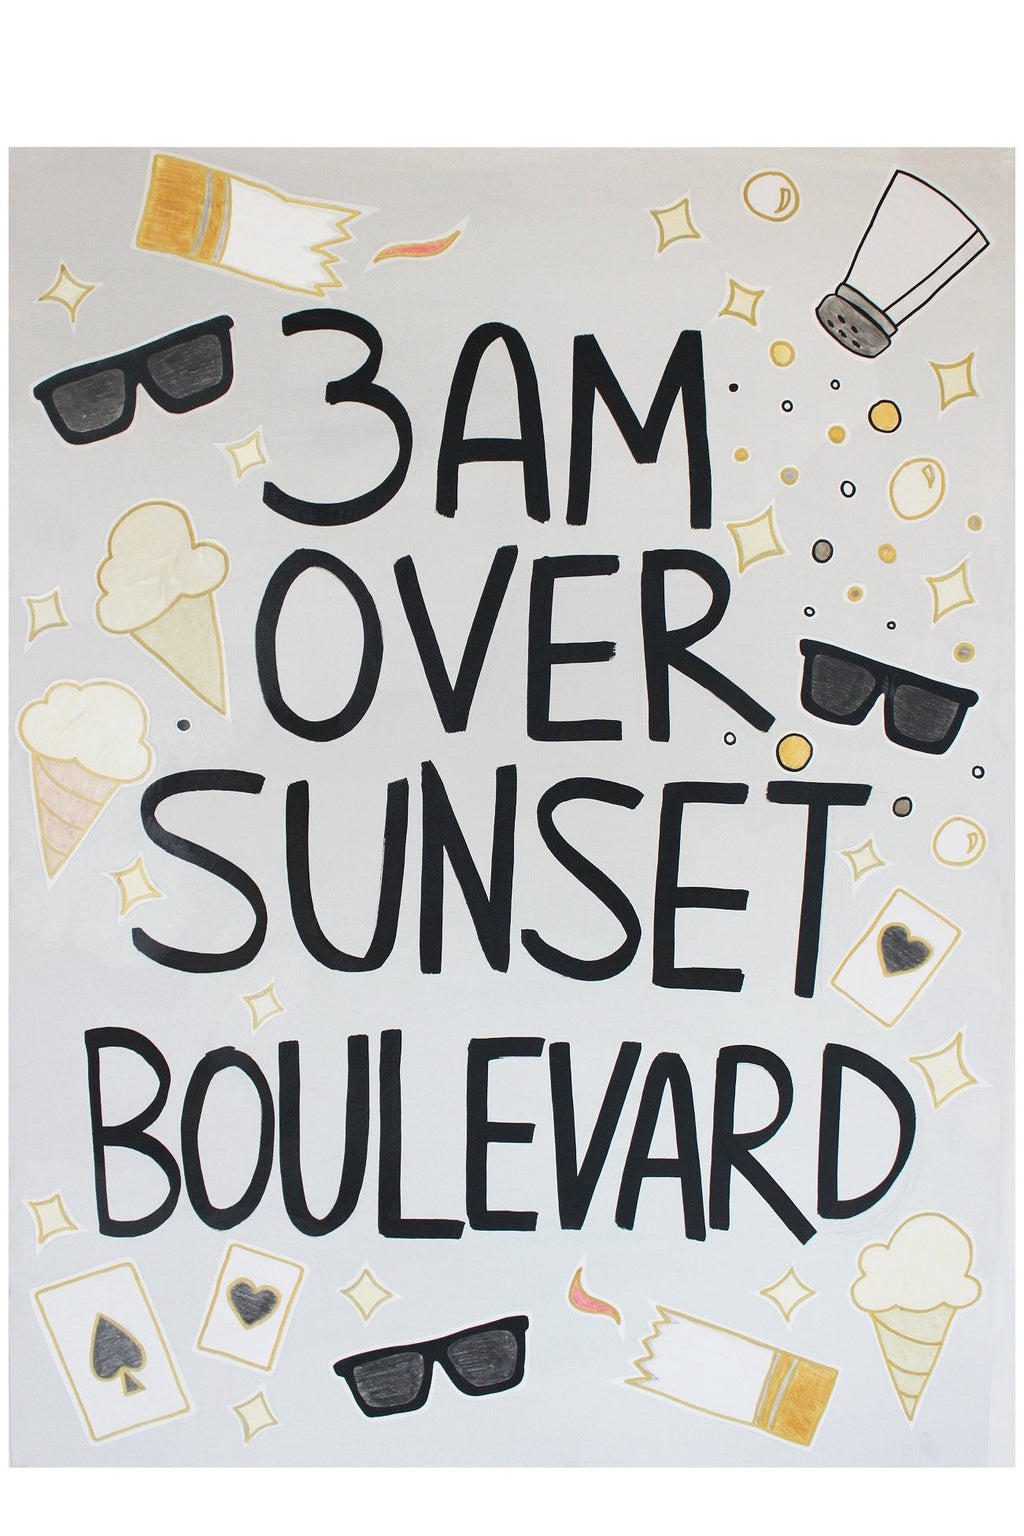 Art Standard Time | Michael J Spiegel Art | 3am Over Sunset Boulevard